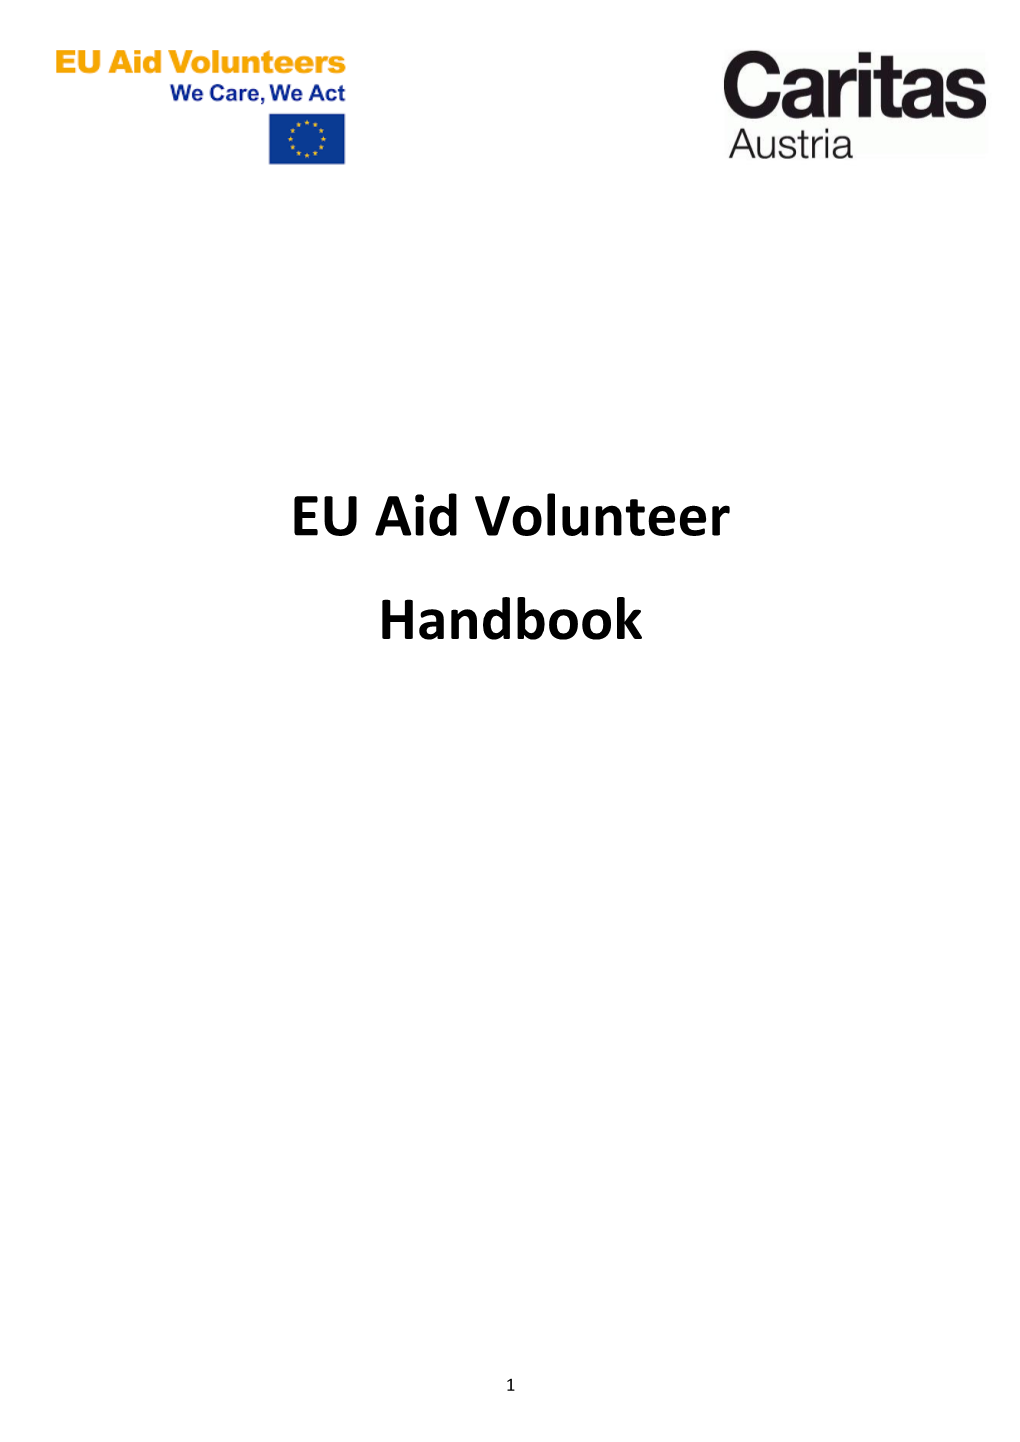 EU Aid Volunteer Handbook